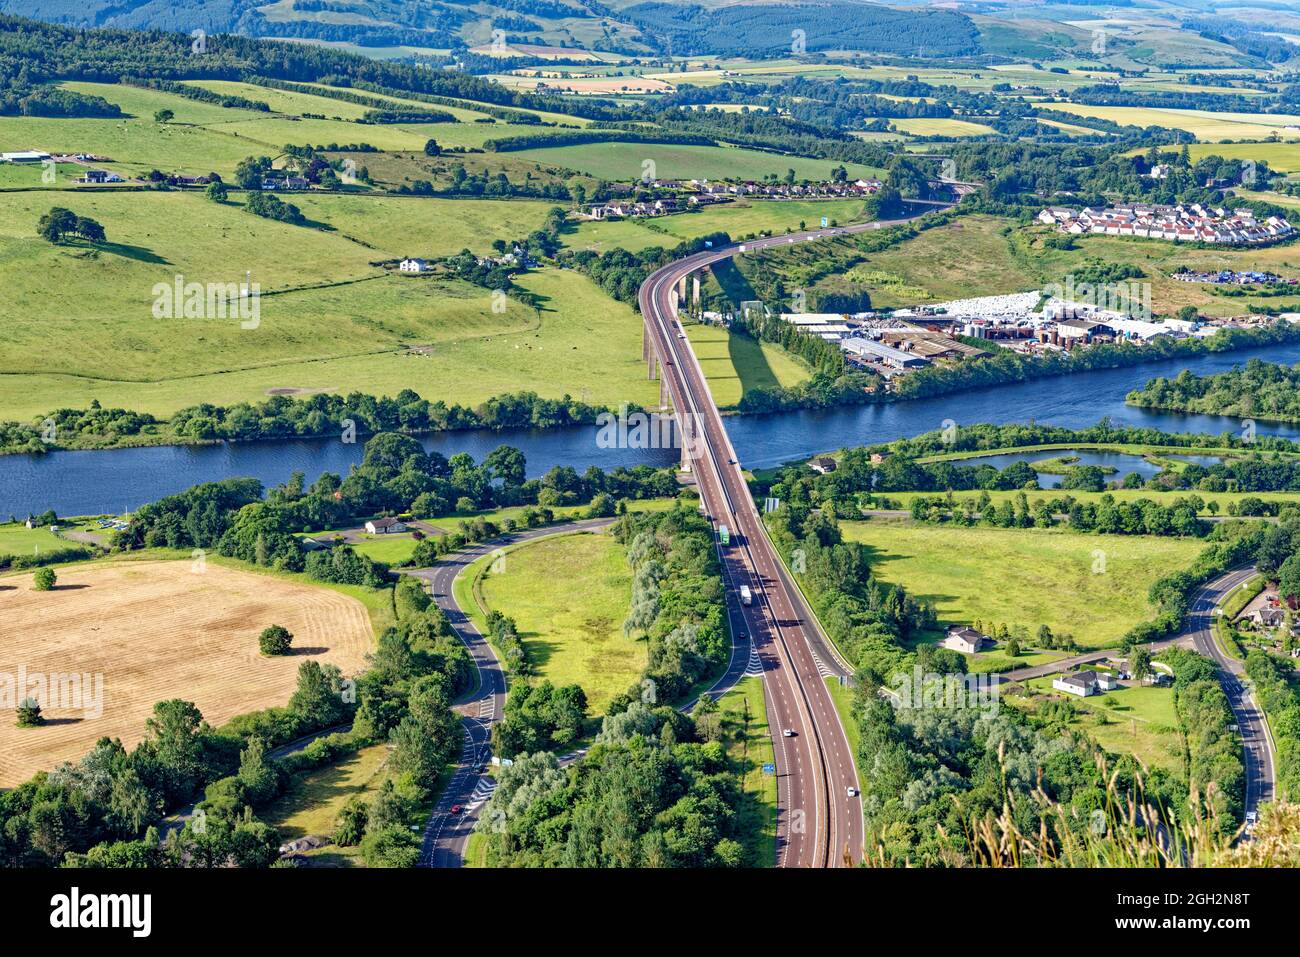 Vue depuis le sommet de Kinnoull Hill, Perth. Écosse, Royaume-Uni montrant le pont Friarton portant l'autoroute M90. 17 juillet 2021 Banque D'Images